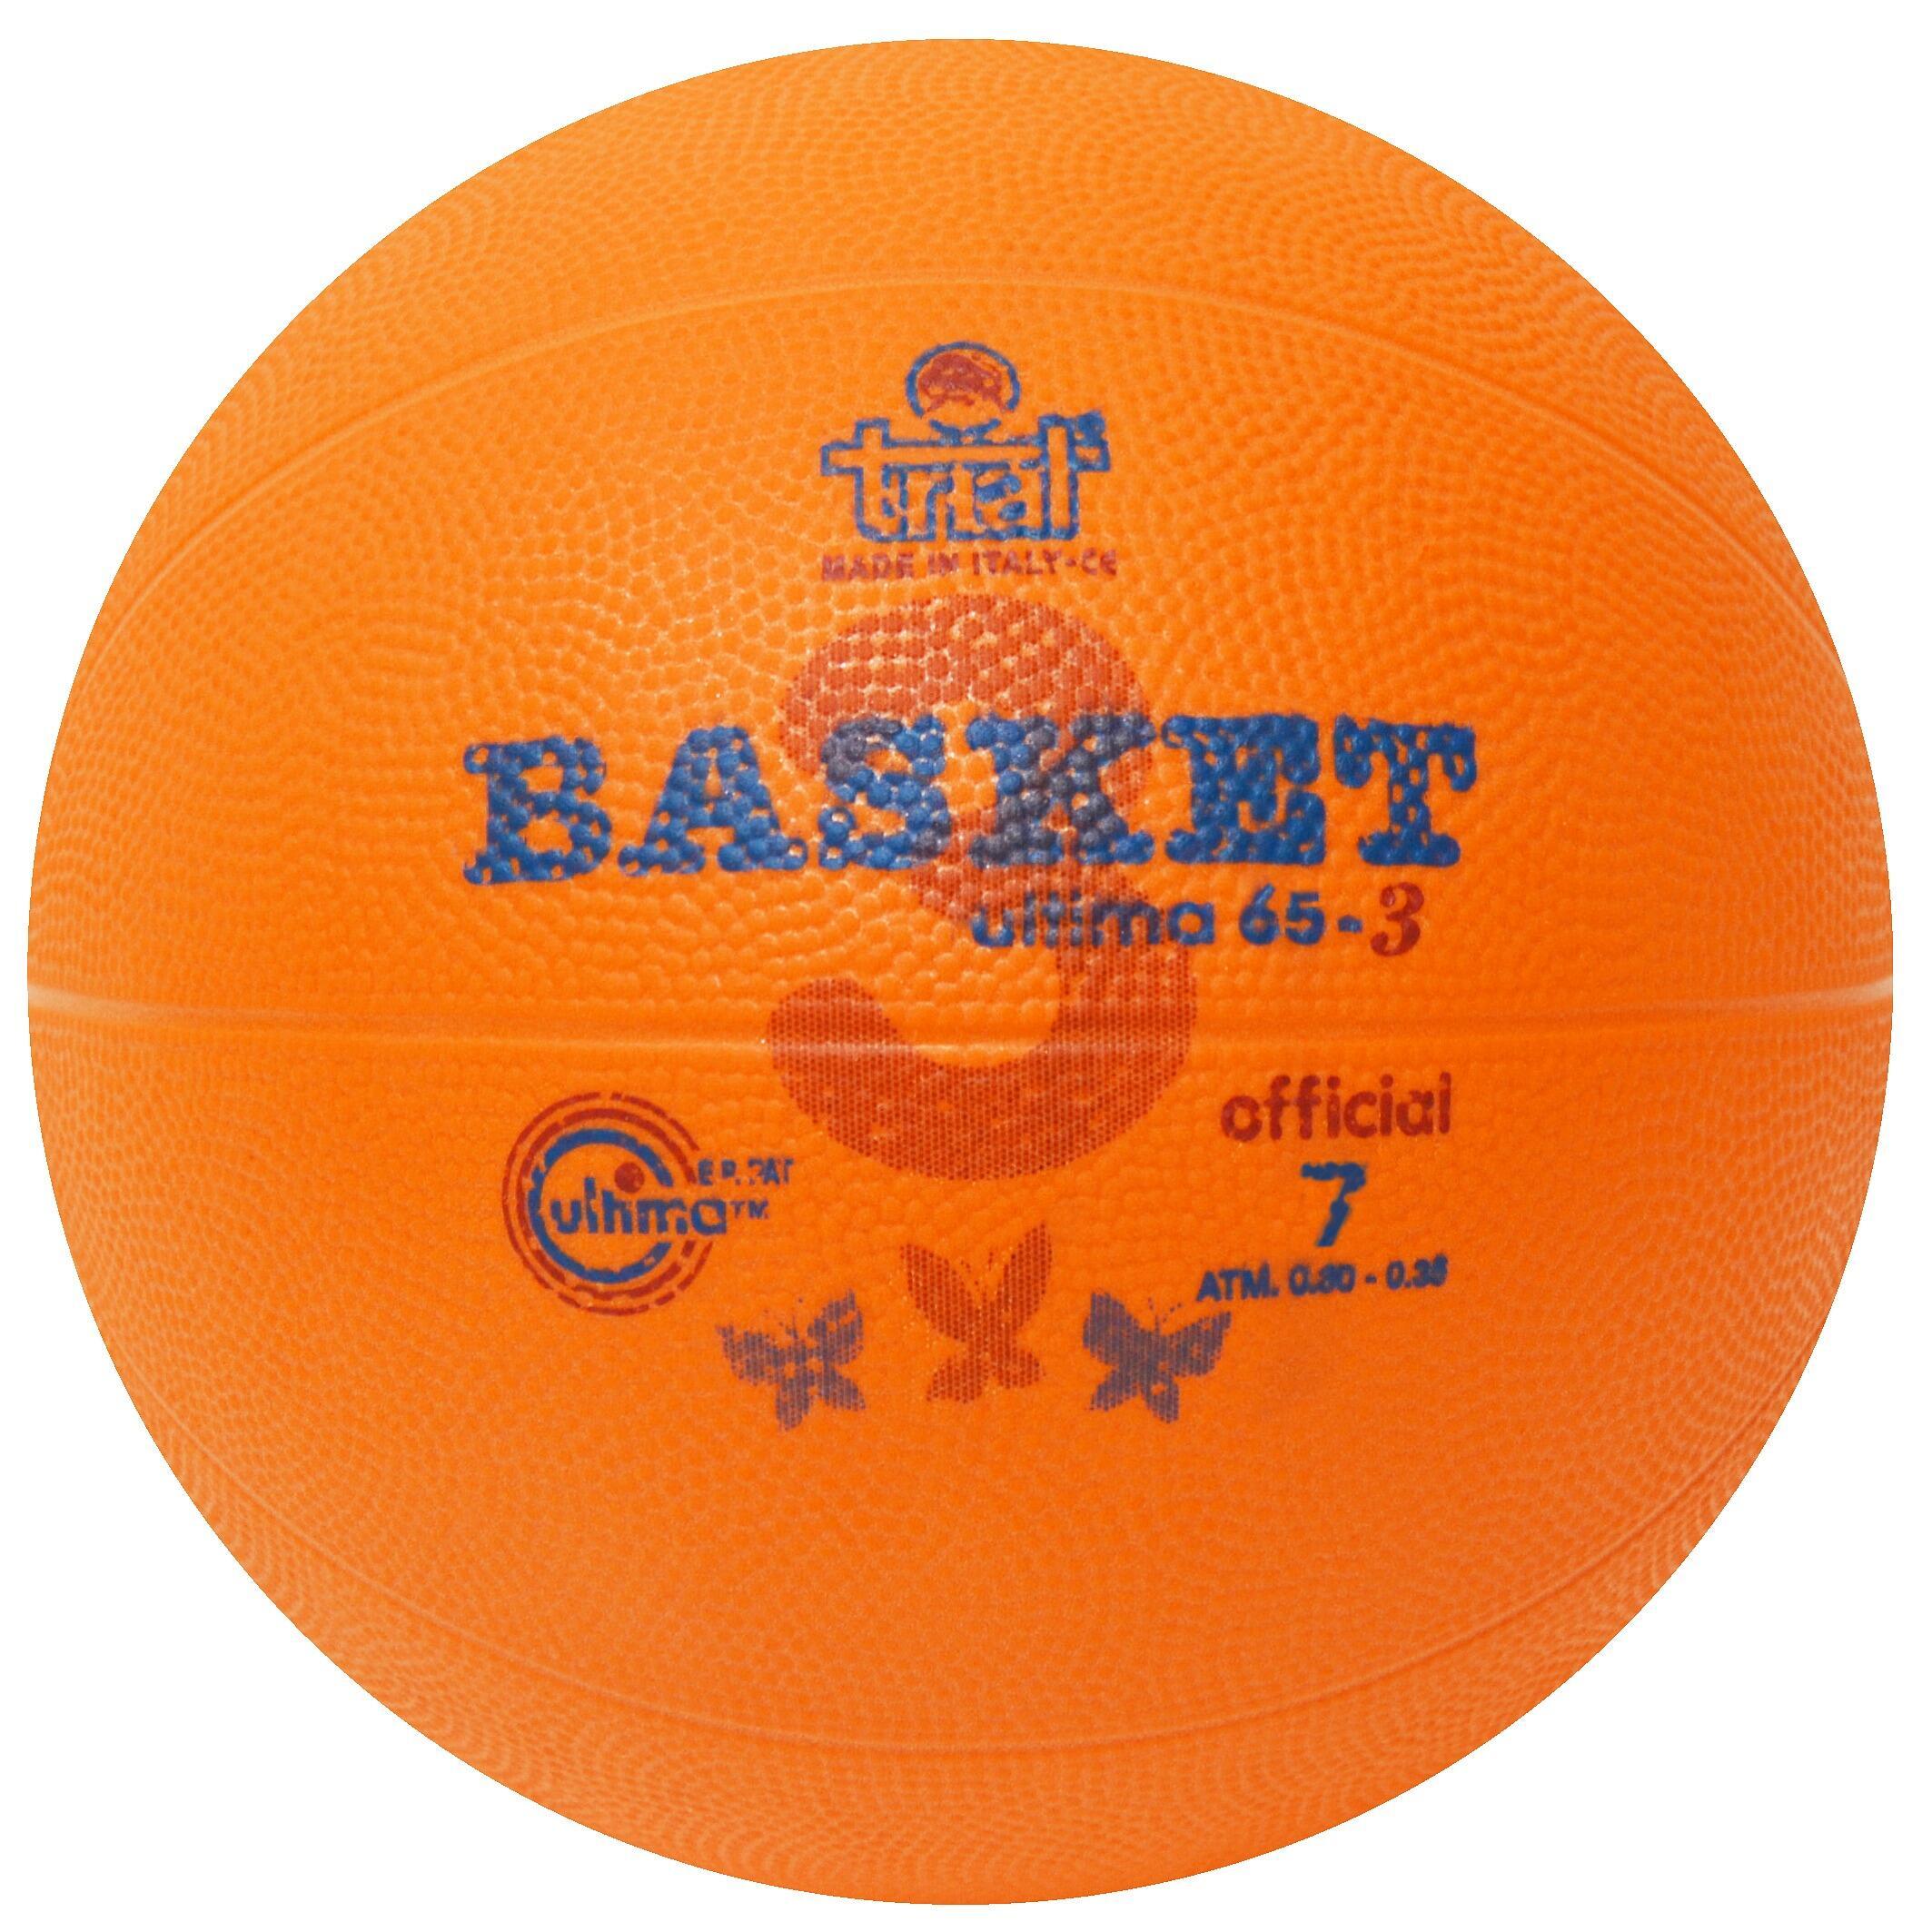 баскетбольные мячи TRIAL, апельсин новые стандартные баскетбольные мячи из полиуретана размер 7 женские баскетбольные мячи для тренировок в помещении и на открытом воздухе